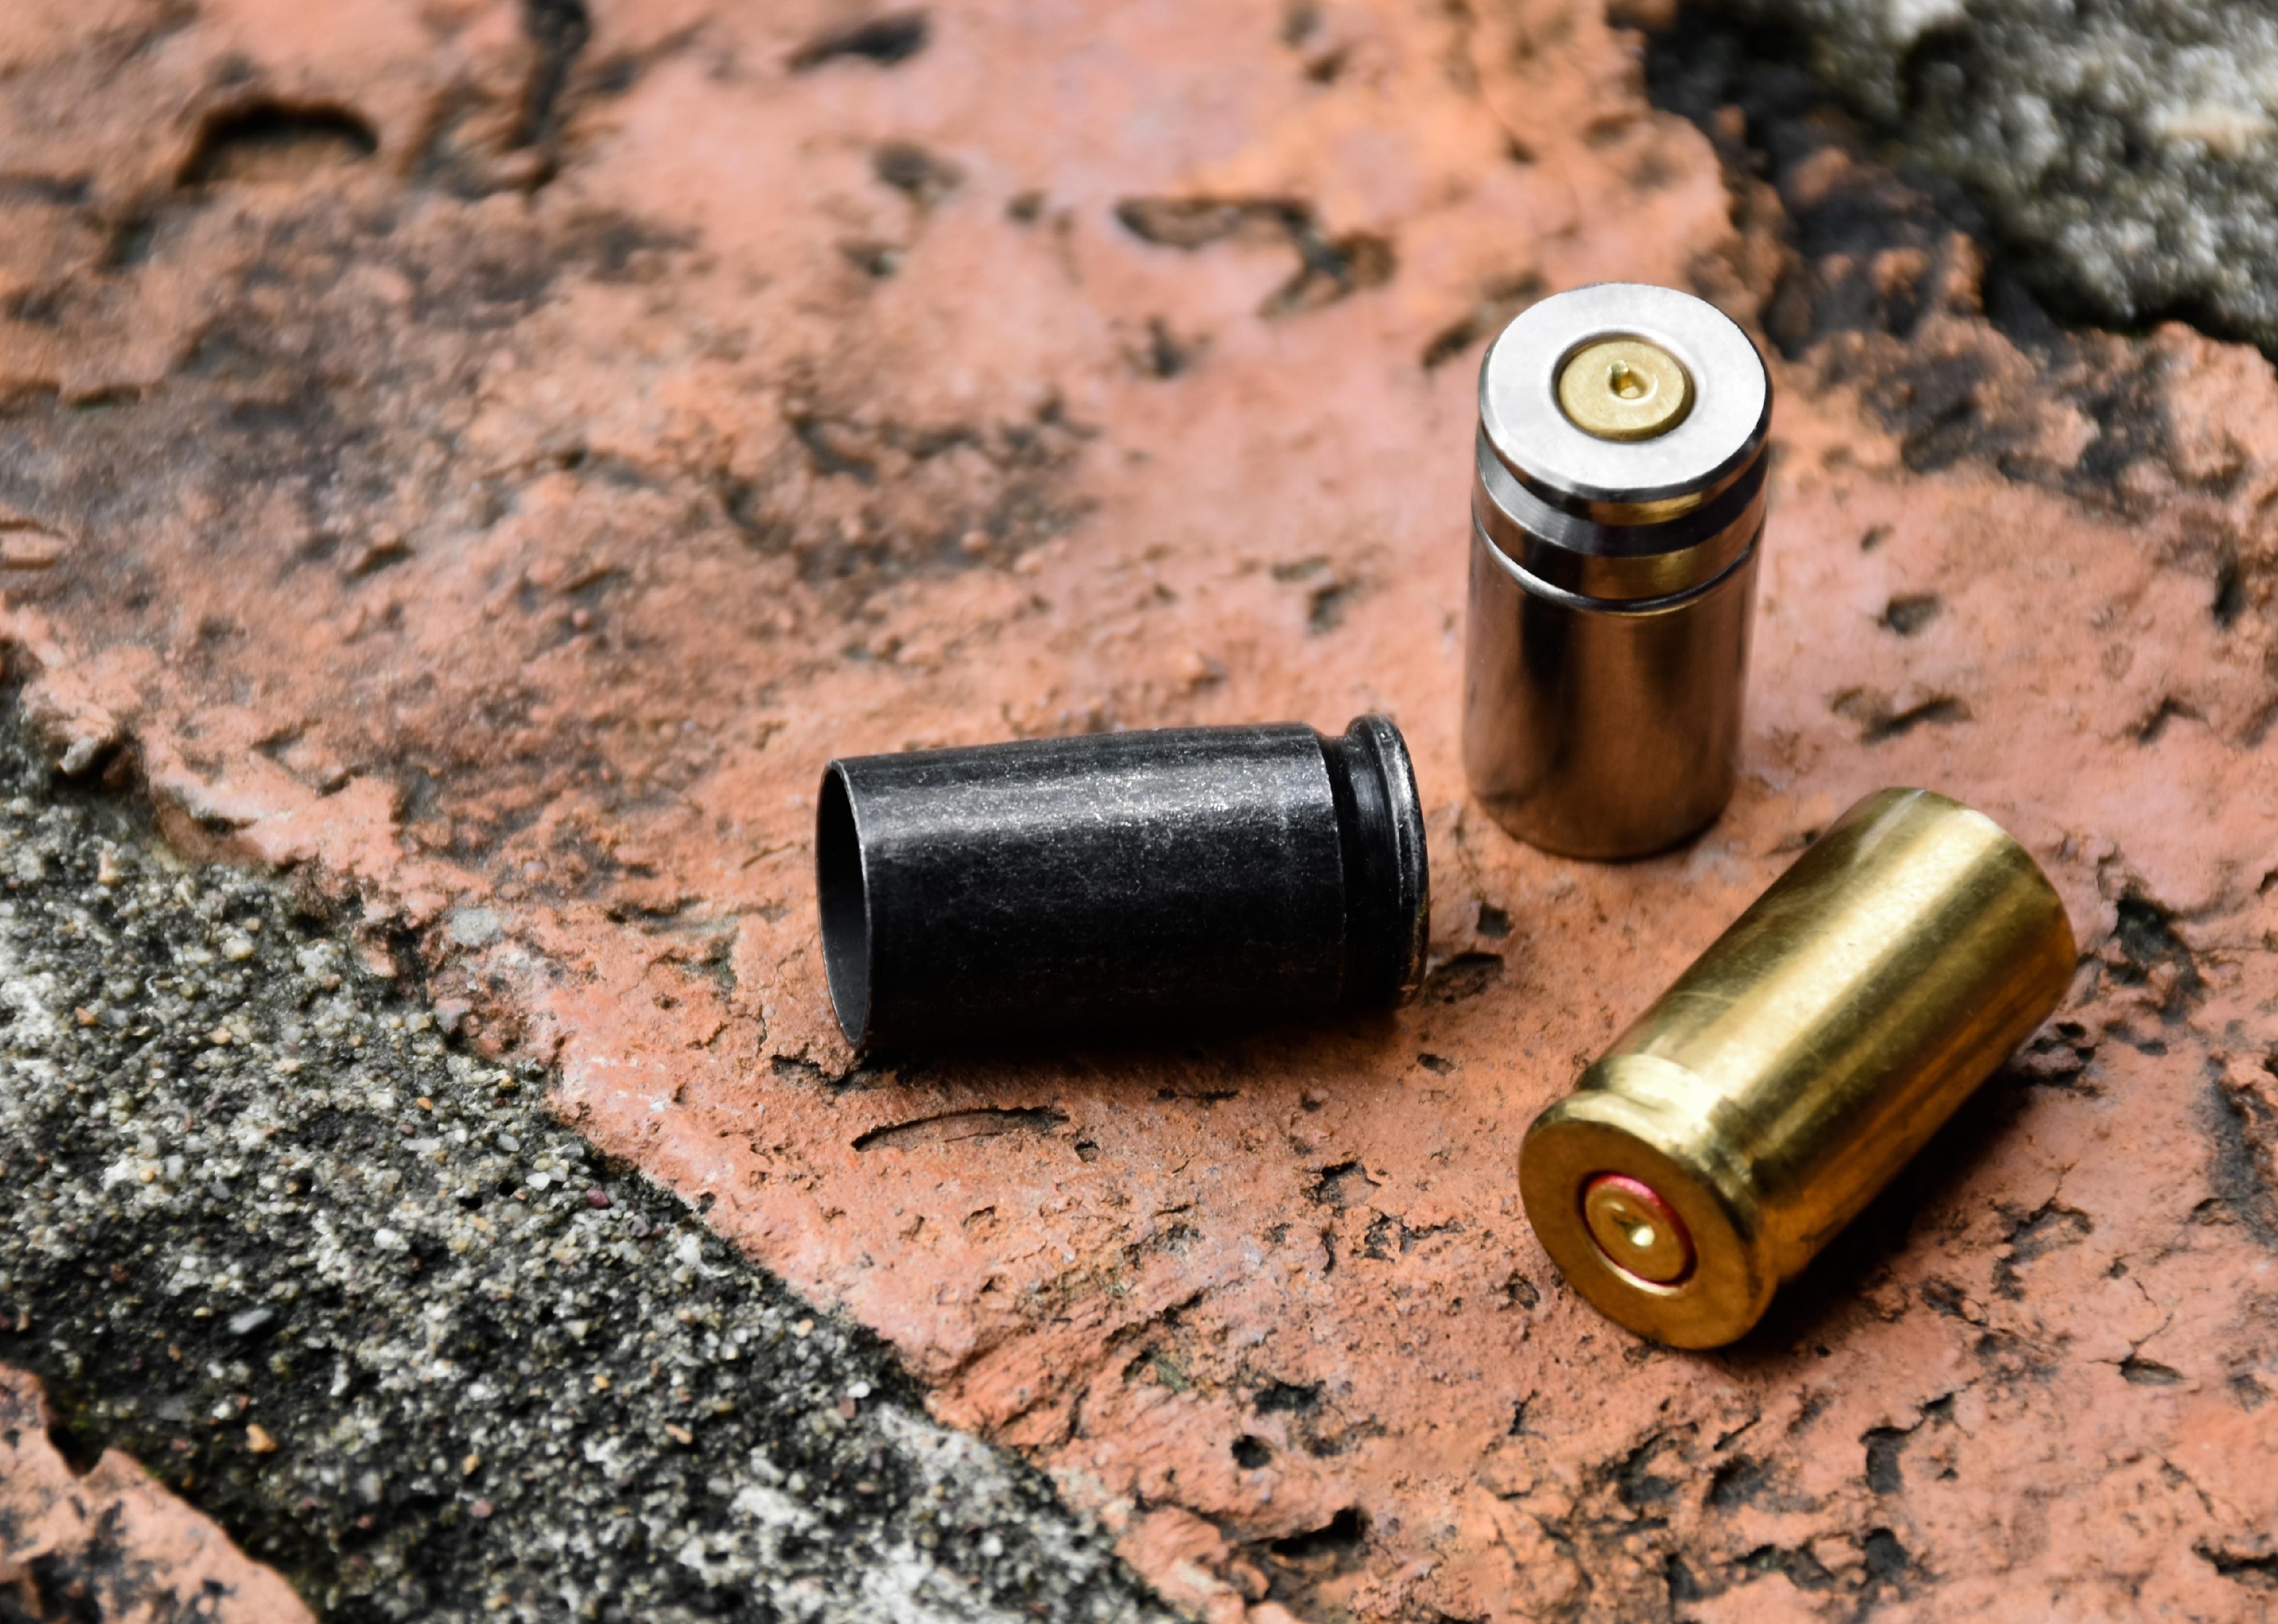 9mm pistol bullets and bullet shells on brick floor.